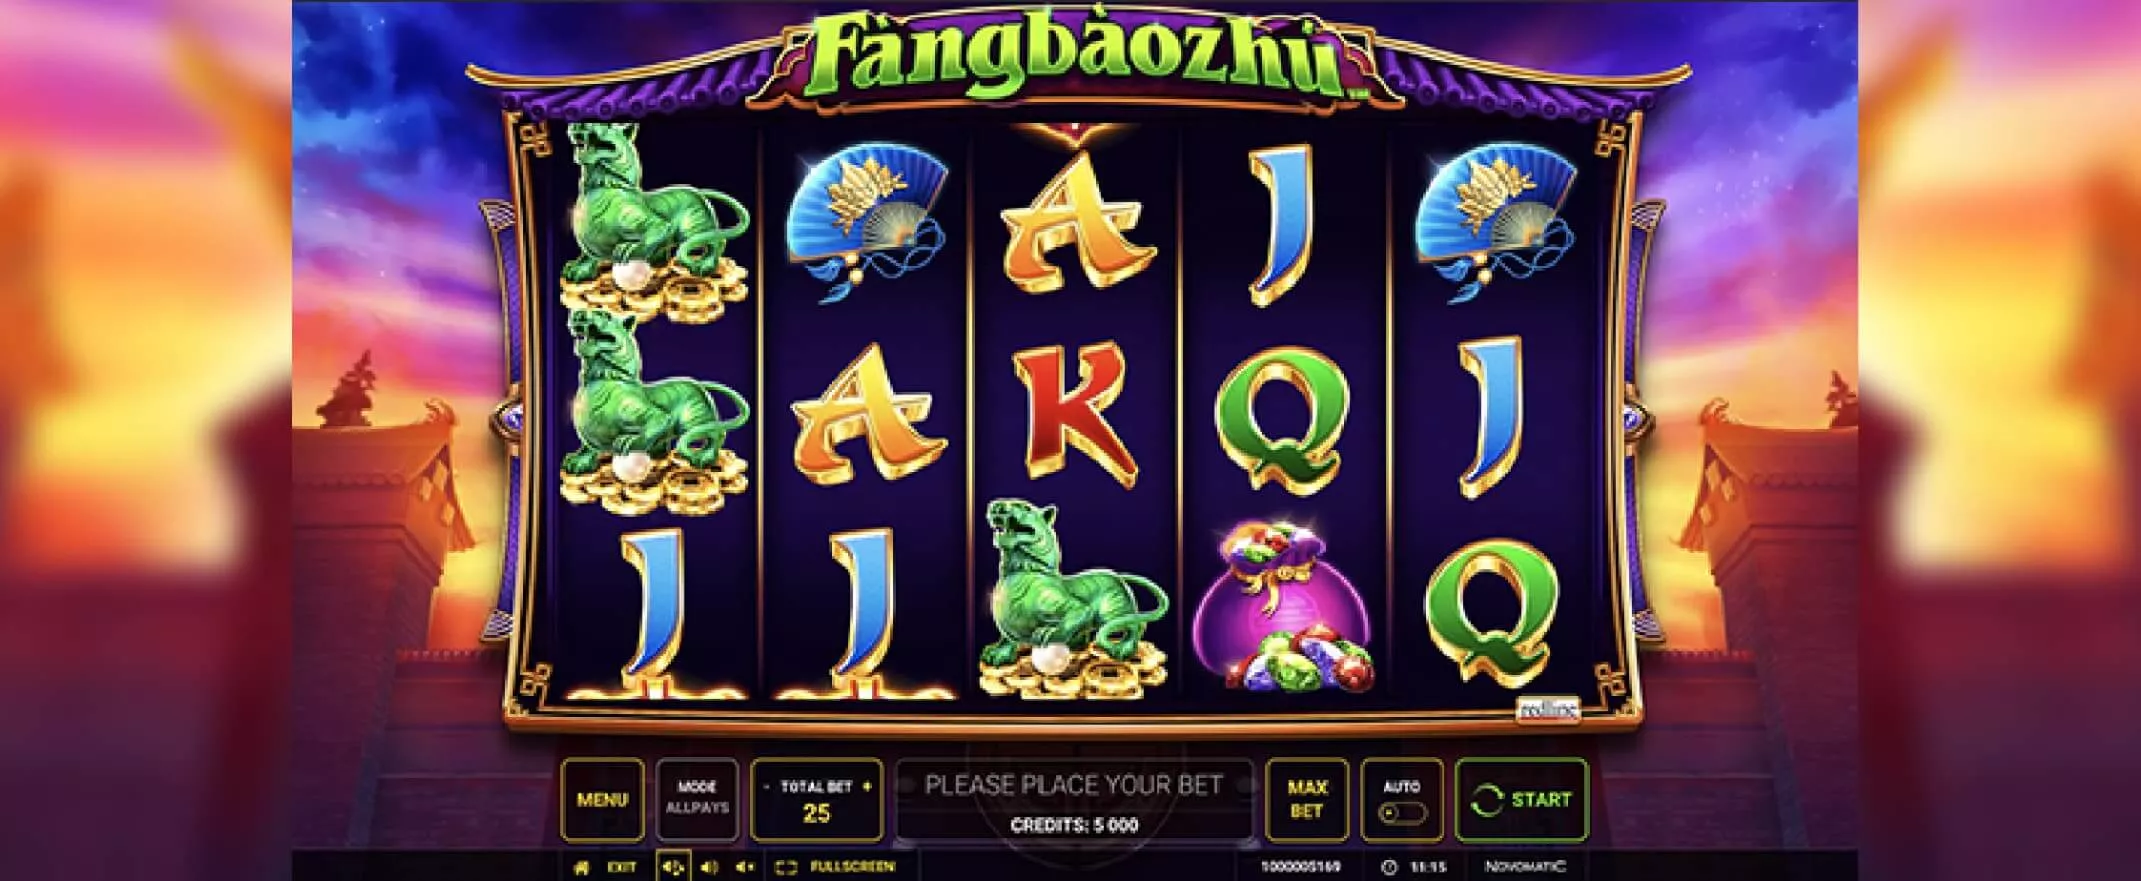 Fàngbàozhú slot screenshot of the reels